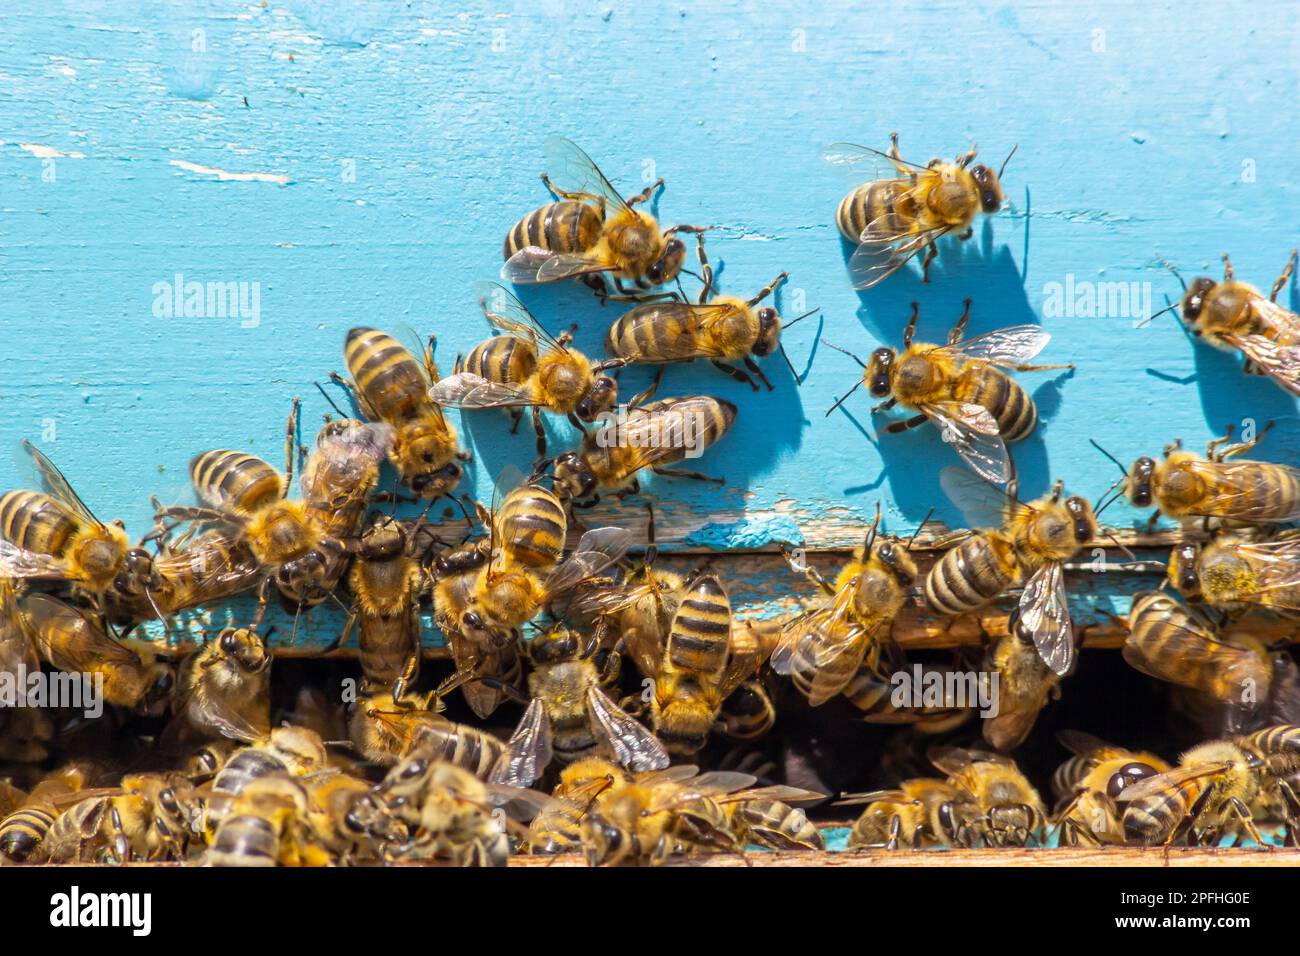 Ein Schwarm Honigbienen, die um den Bienenstock fliegen. Bienen, die von der Honigsammlung zurückkehren, fliegen zurück zum Bienenstock. Honigbienen auf Hausbiene, Imkereikonzept. Stockfoto